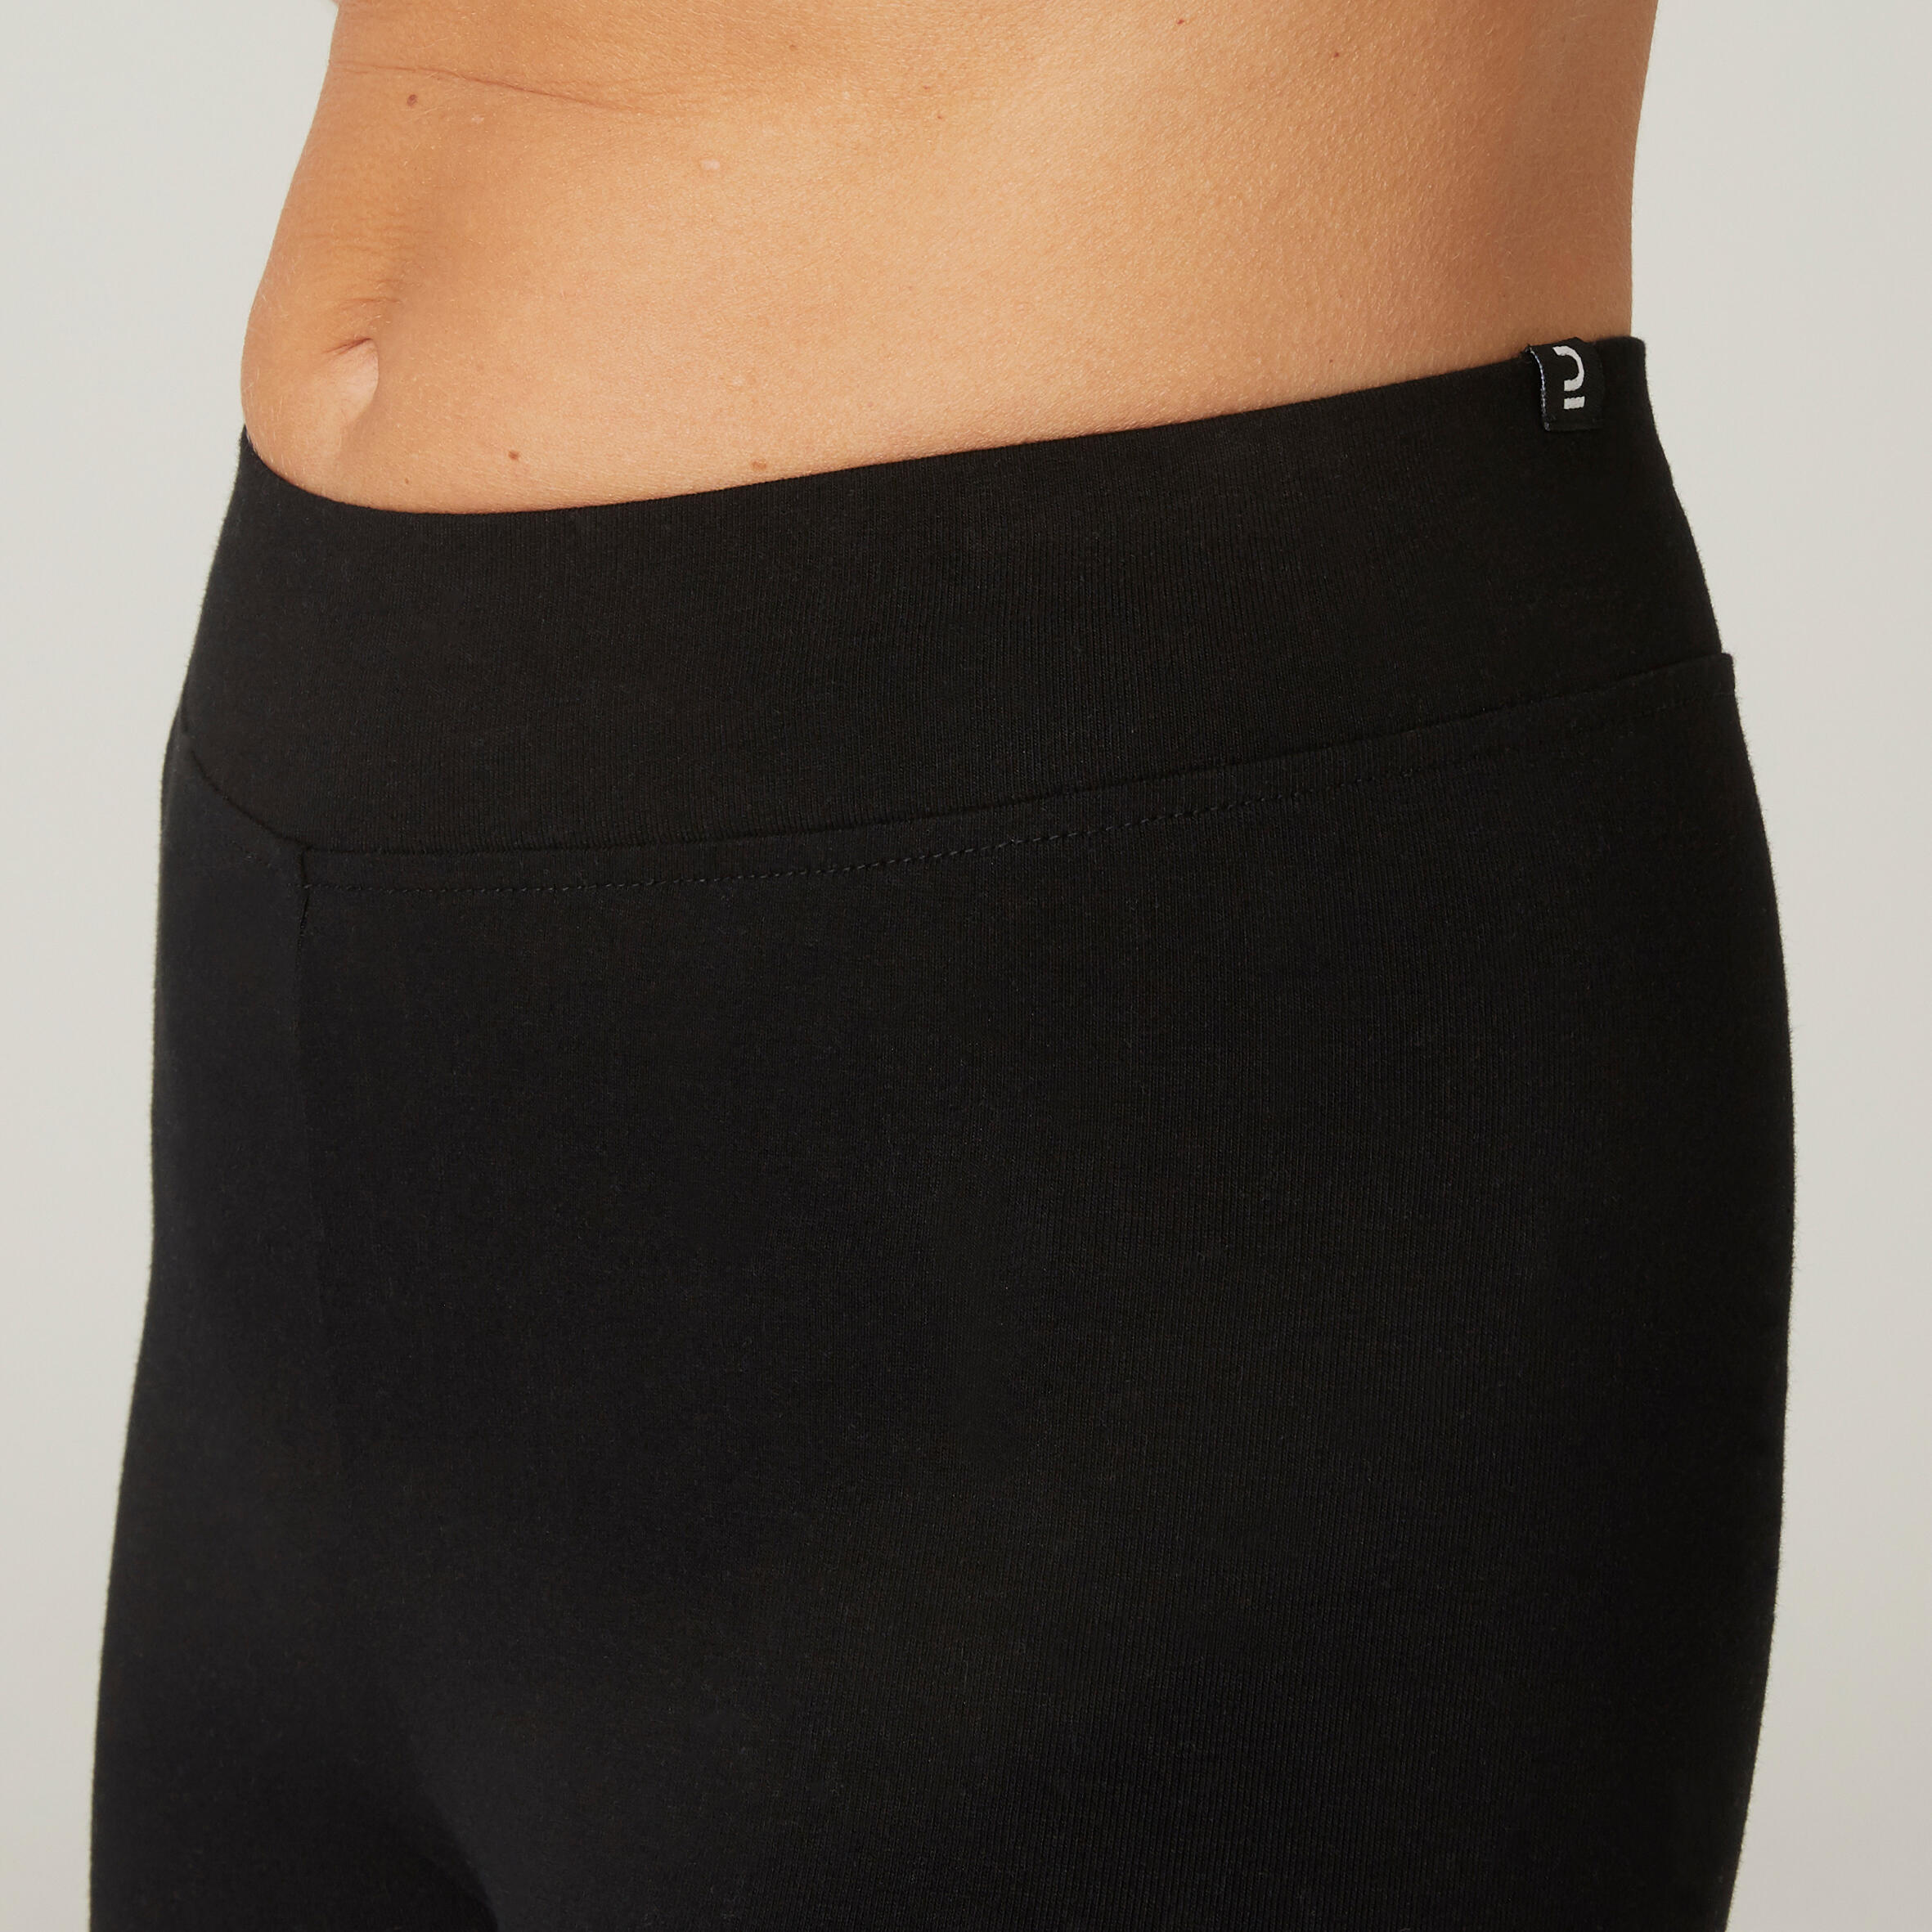 Women Yoga Pants Cotton Cropped - Black/Grey